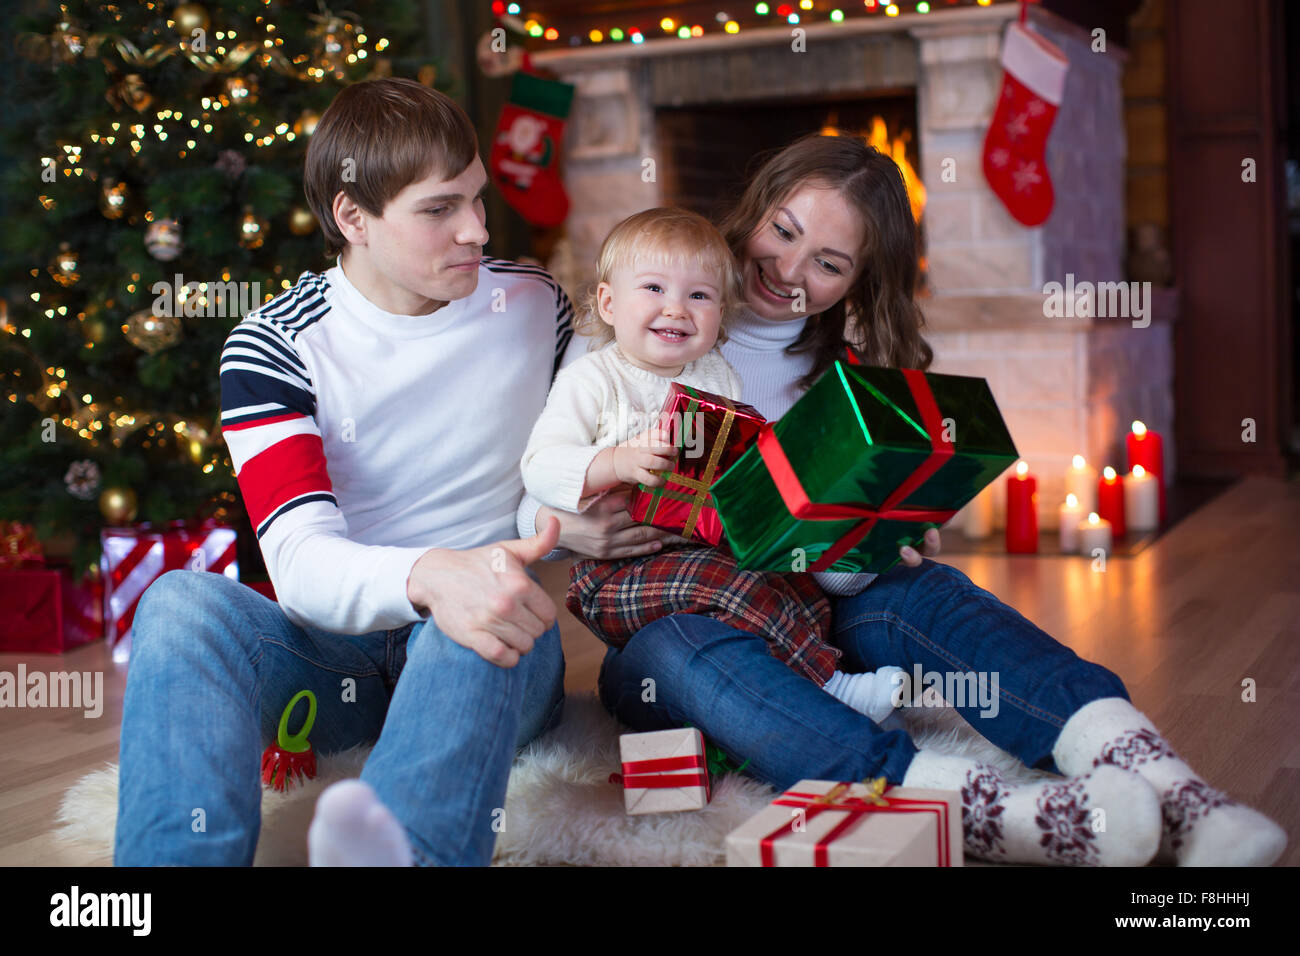 Happy Family - père, mère et petit garçon assis avec des cadeaux près de l'arbre de Noël et cheminée Banque D'Images